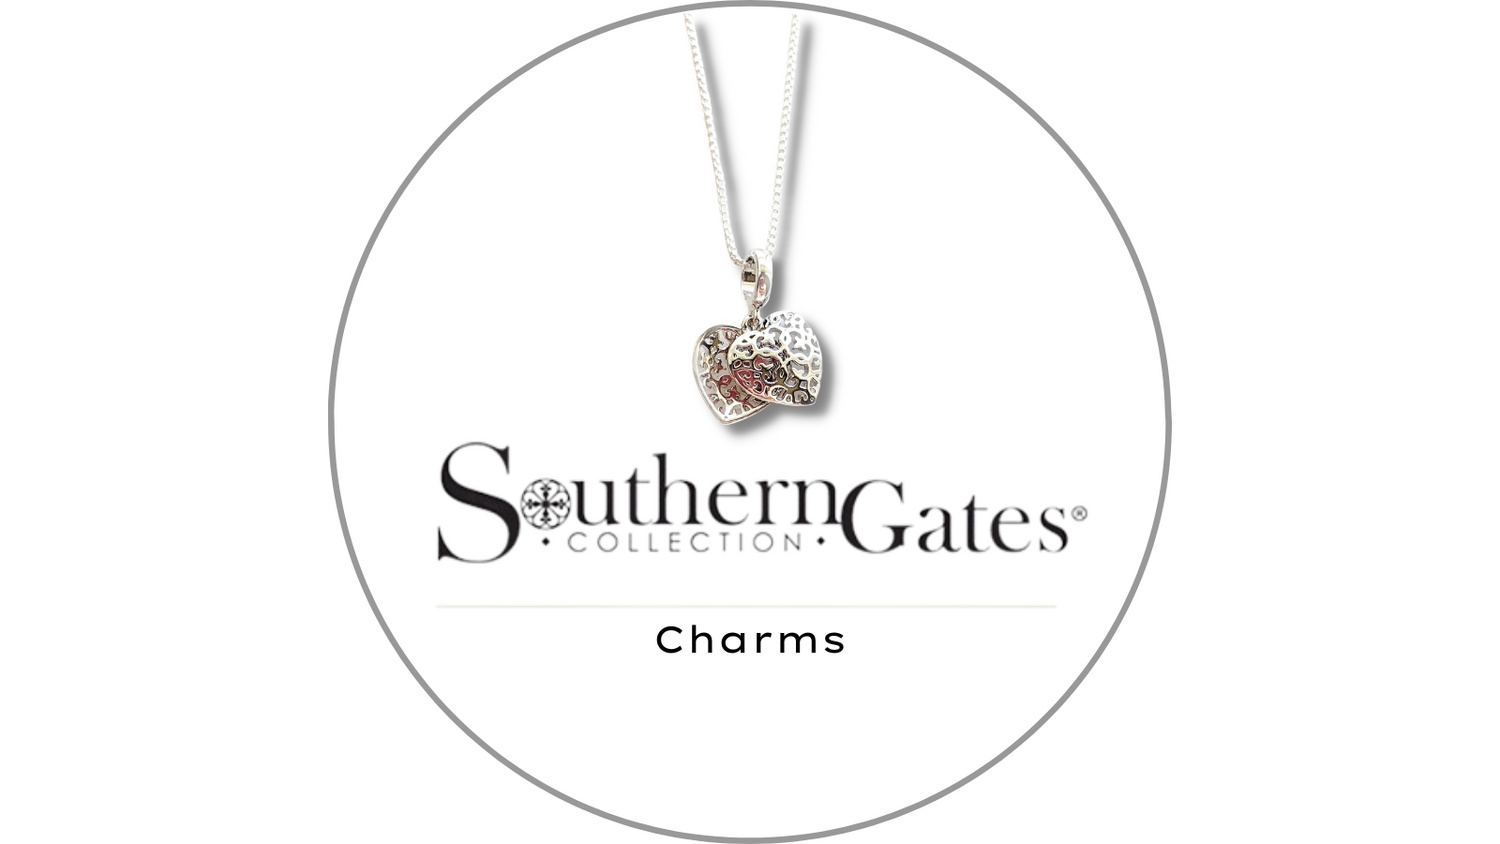 Southern Gates Charms